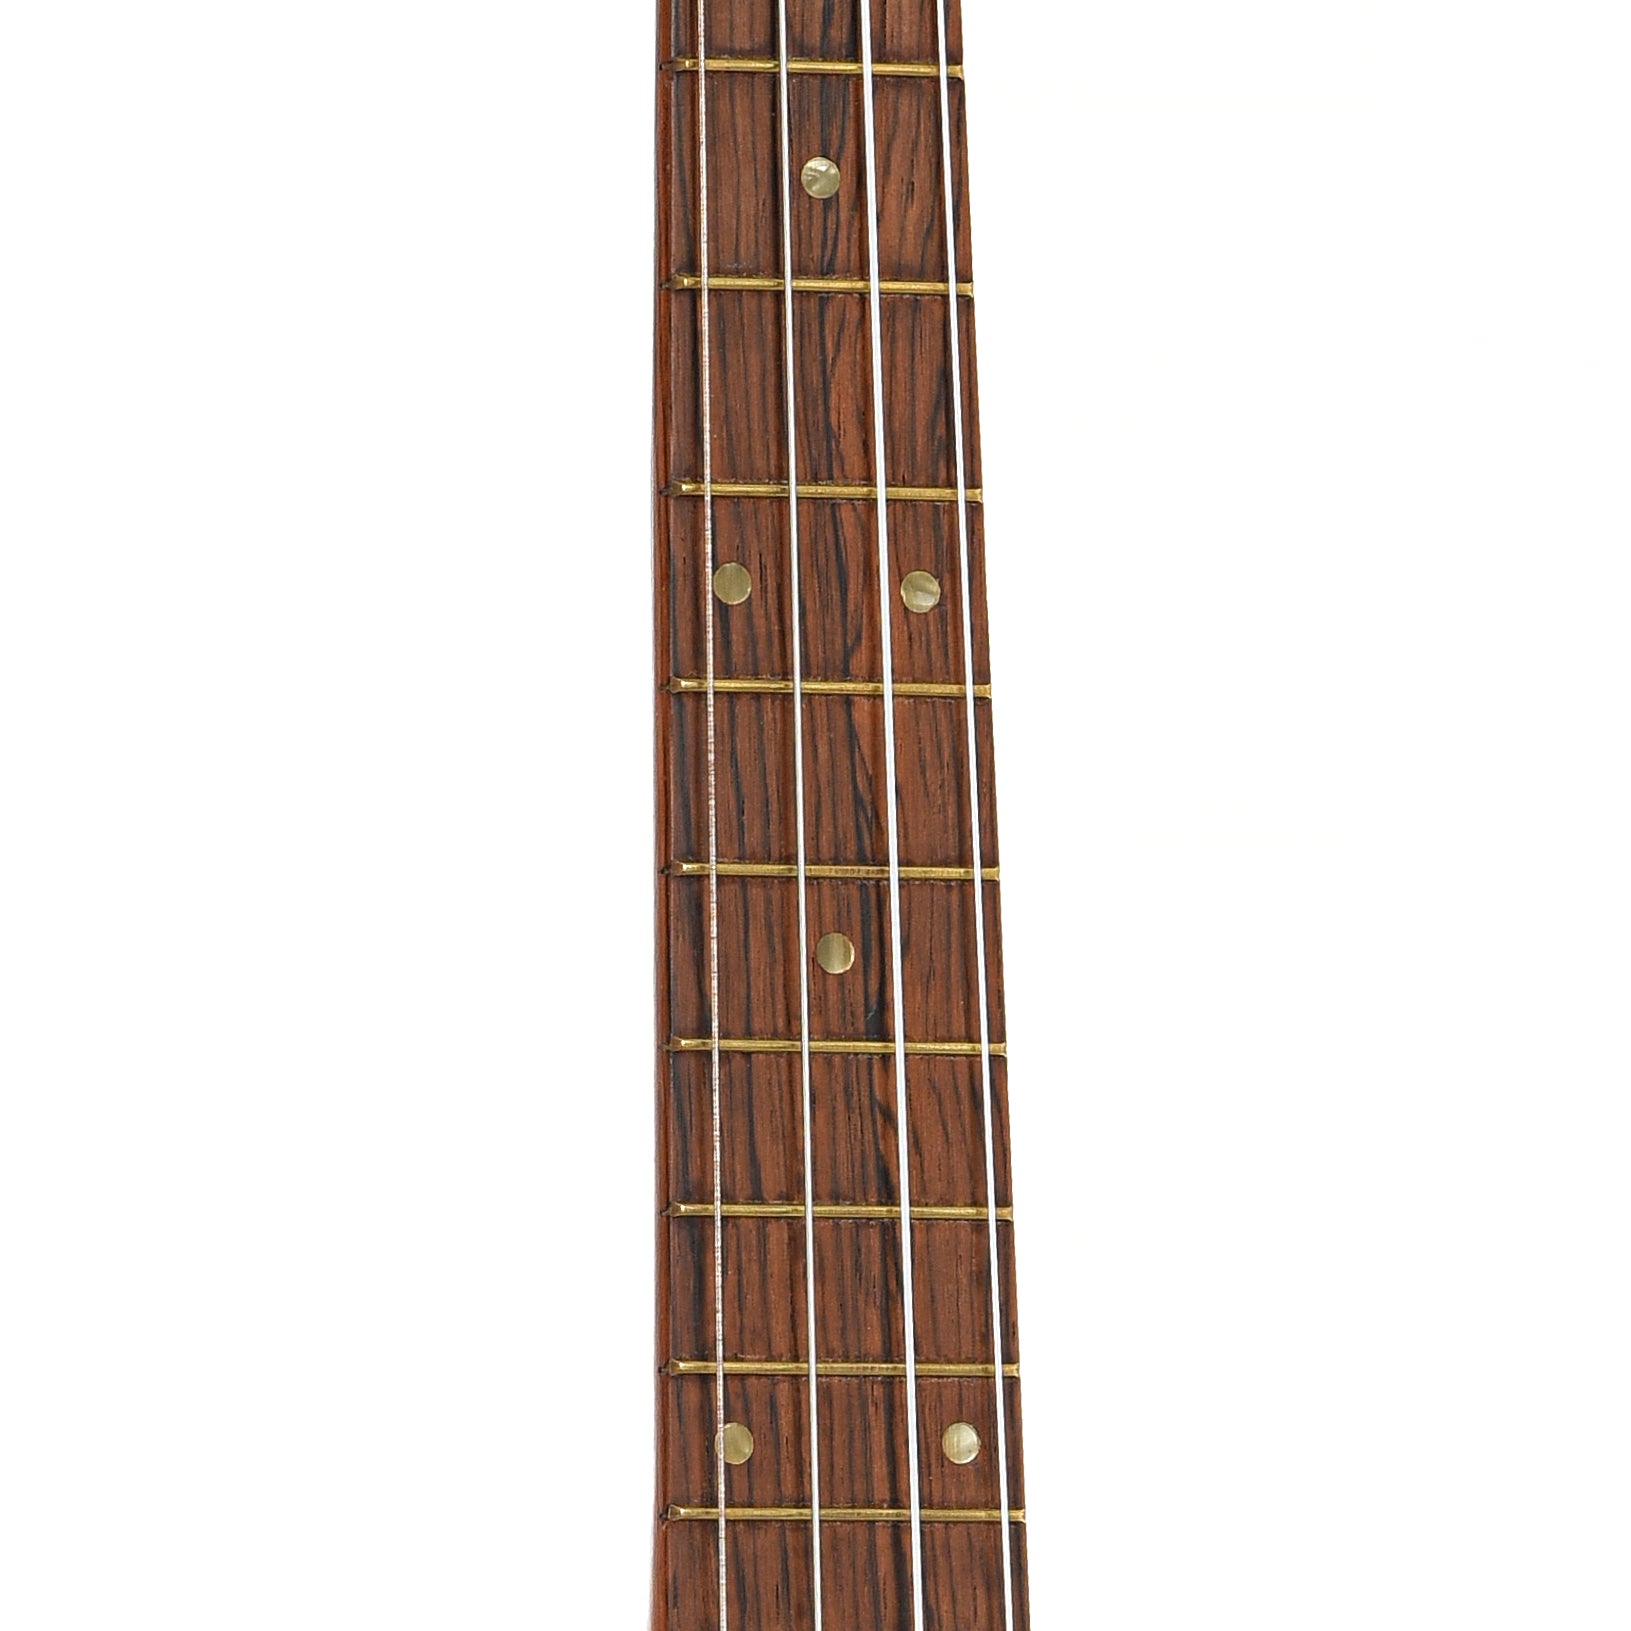 Fretboard of Harmony Baritone Ukulele